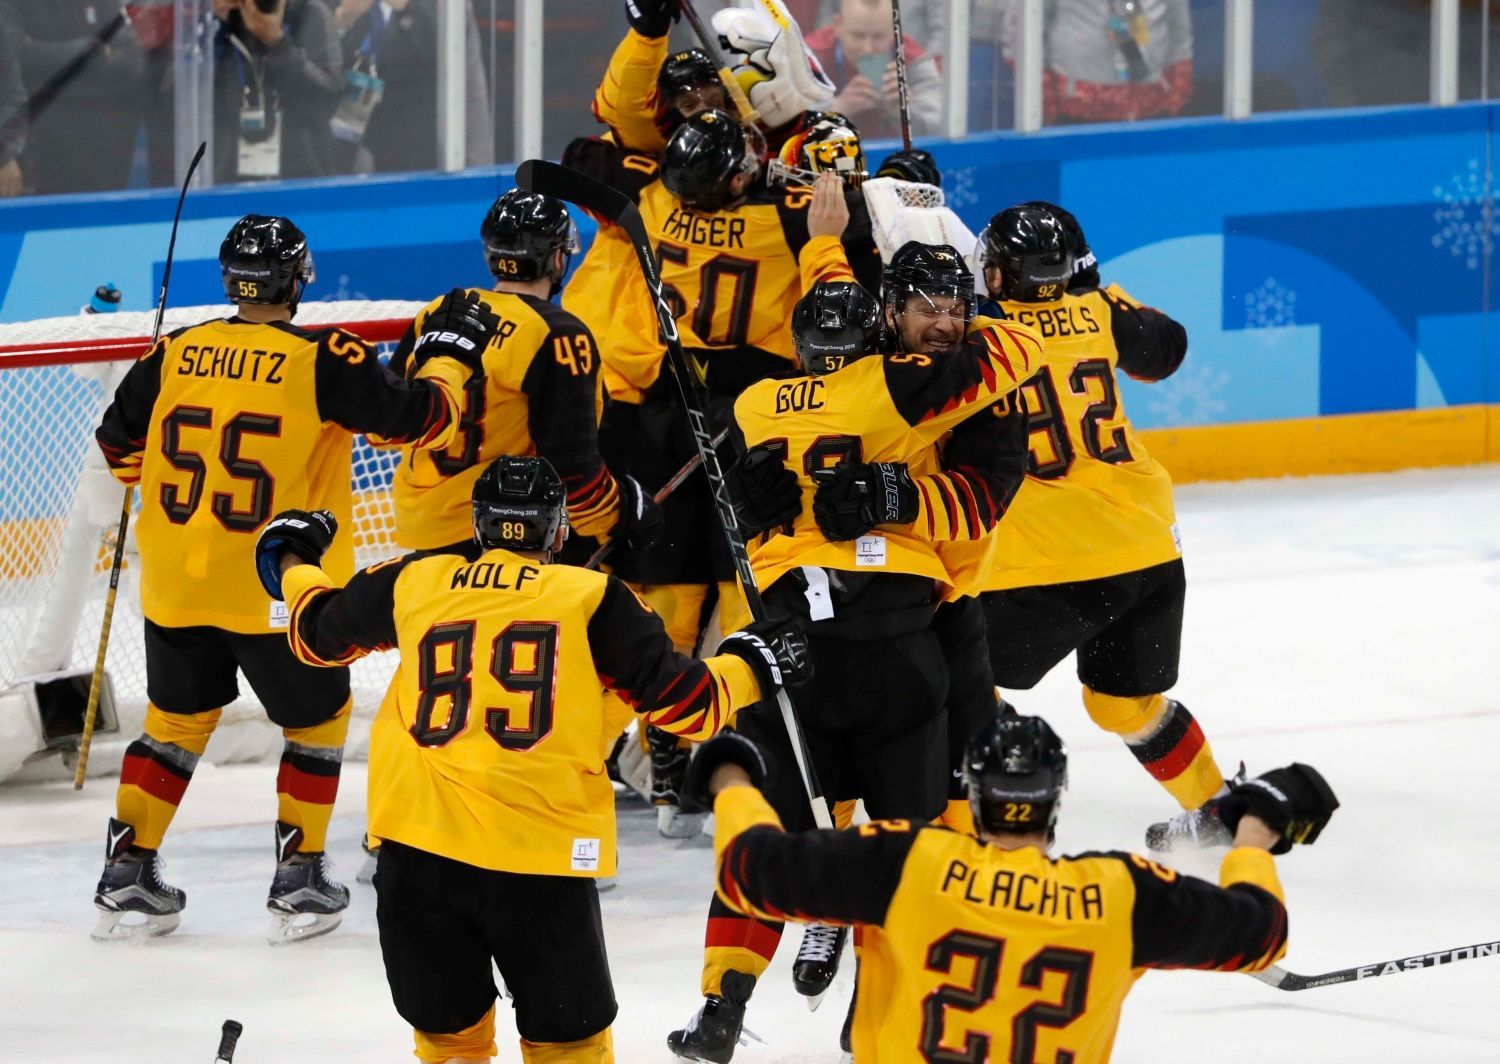 Němci slaví senzační postup do finále hokejového turnaje na ZOH 2018